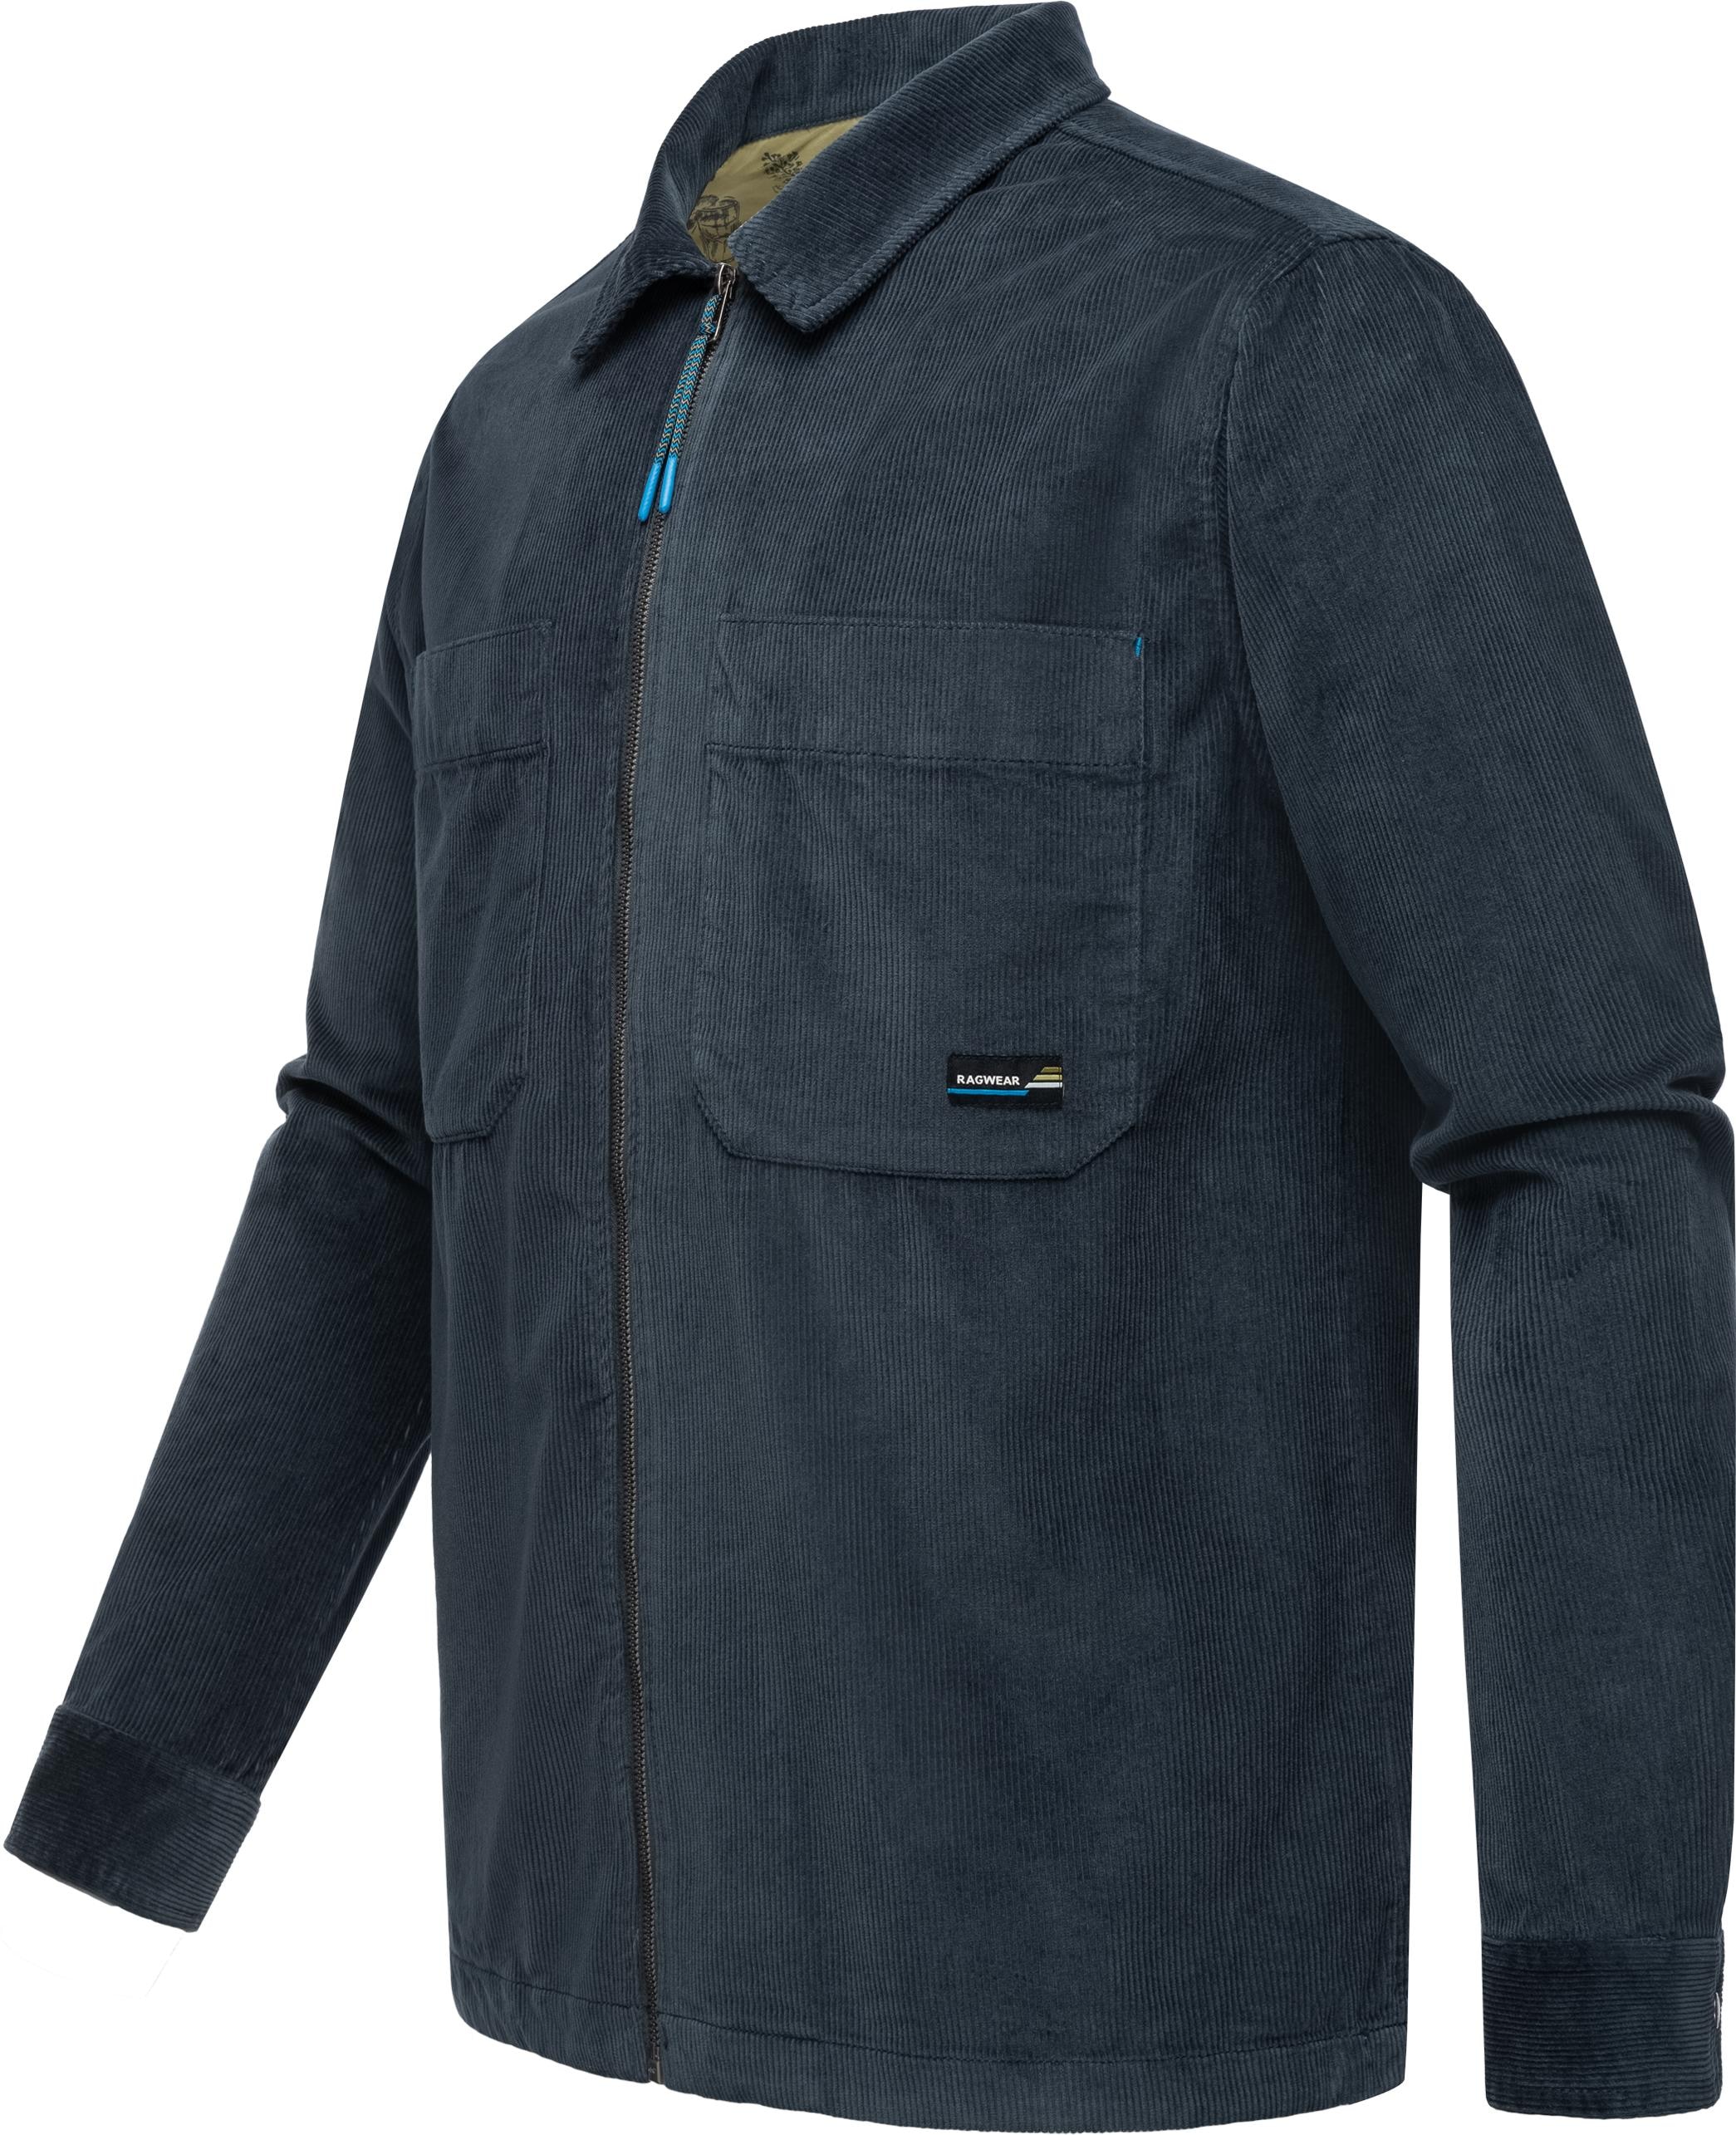 Ragwear Langarmhemd »Cordy«, Stylische Herren Hemdjacke aus Cord mit großen Brusttaschen